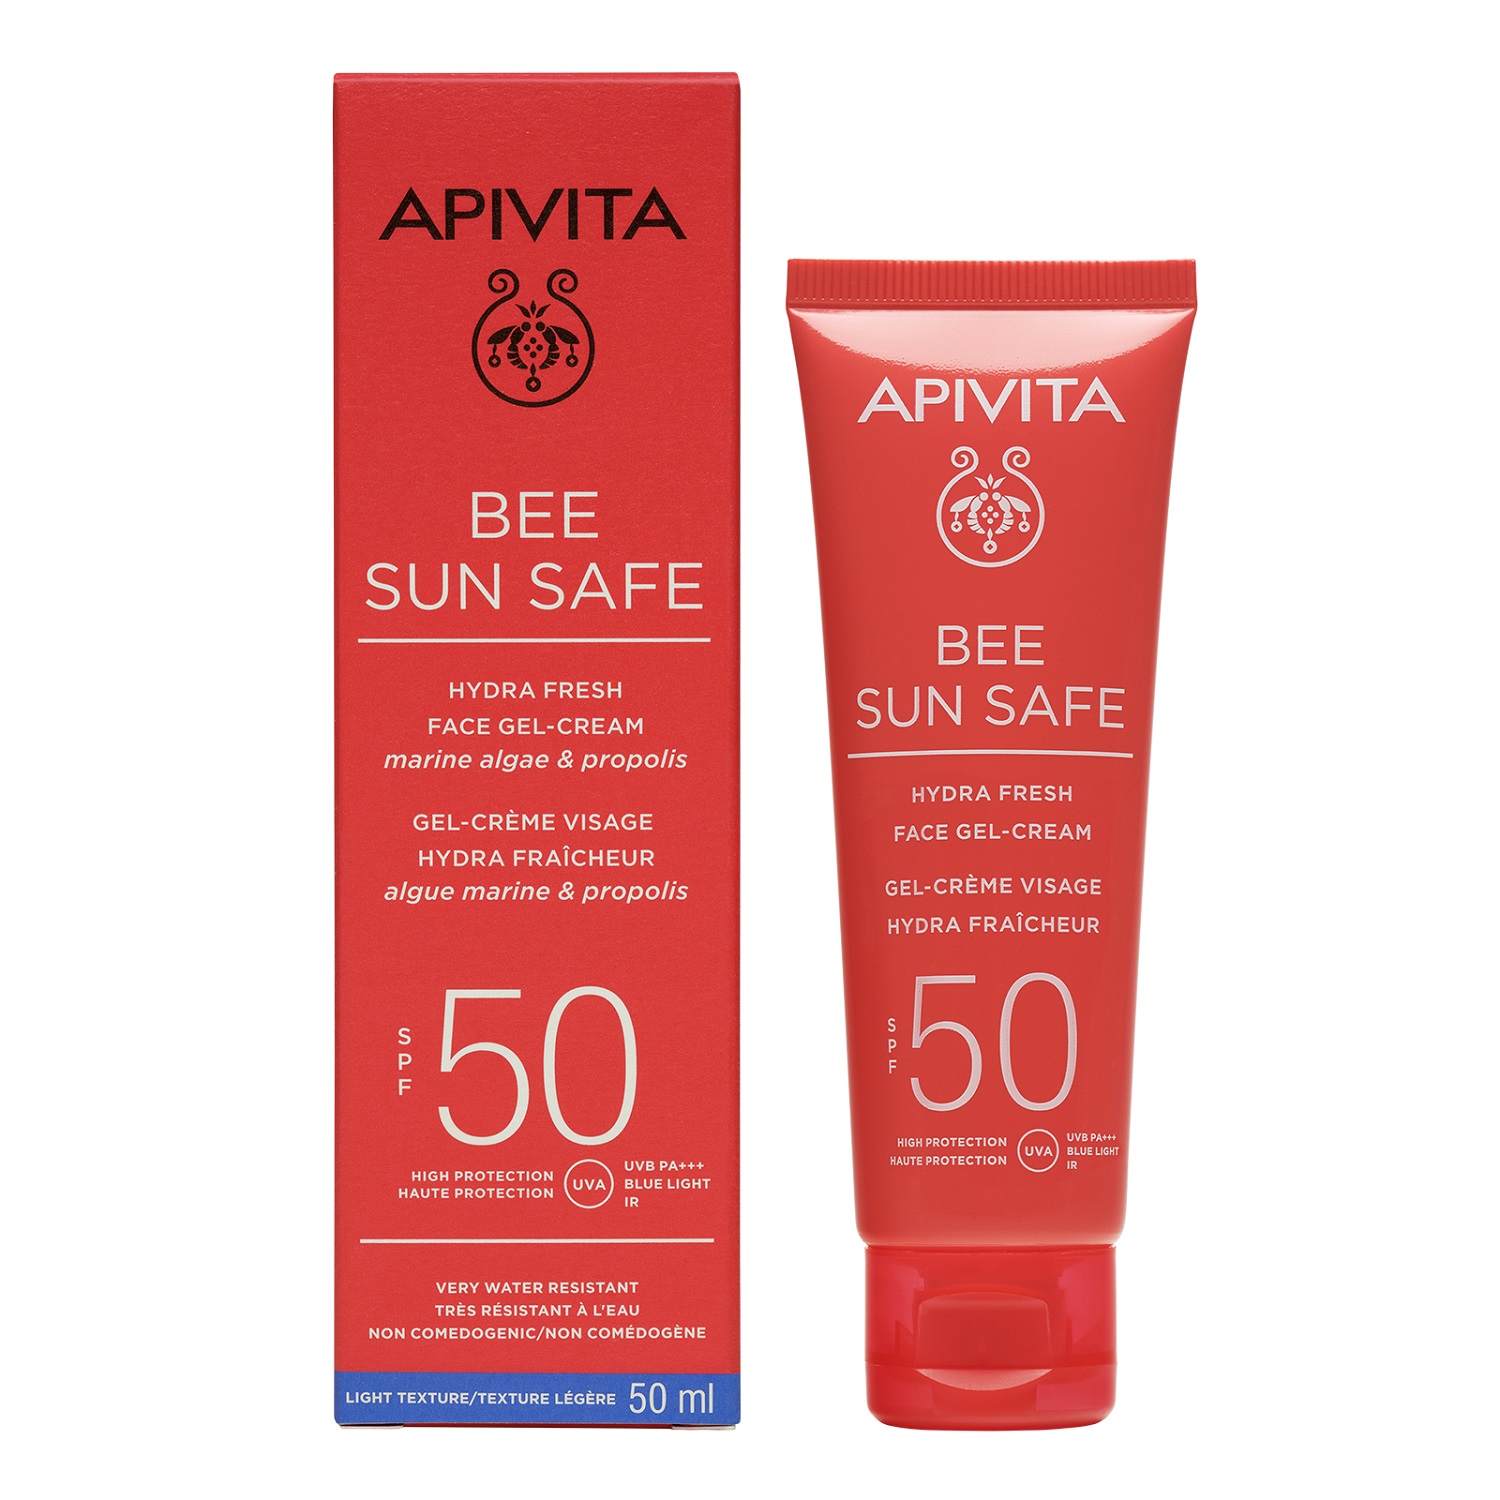 Апивита Солнцезащитный увлажняющий гель-крем для лица SPF50, 50 мл (Apivita, Bee Sun Safe) фото 0